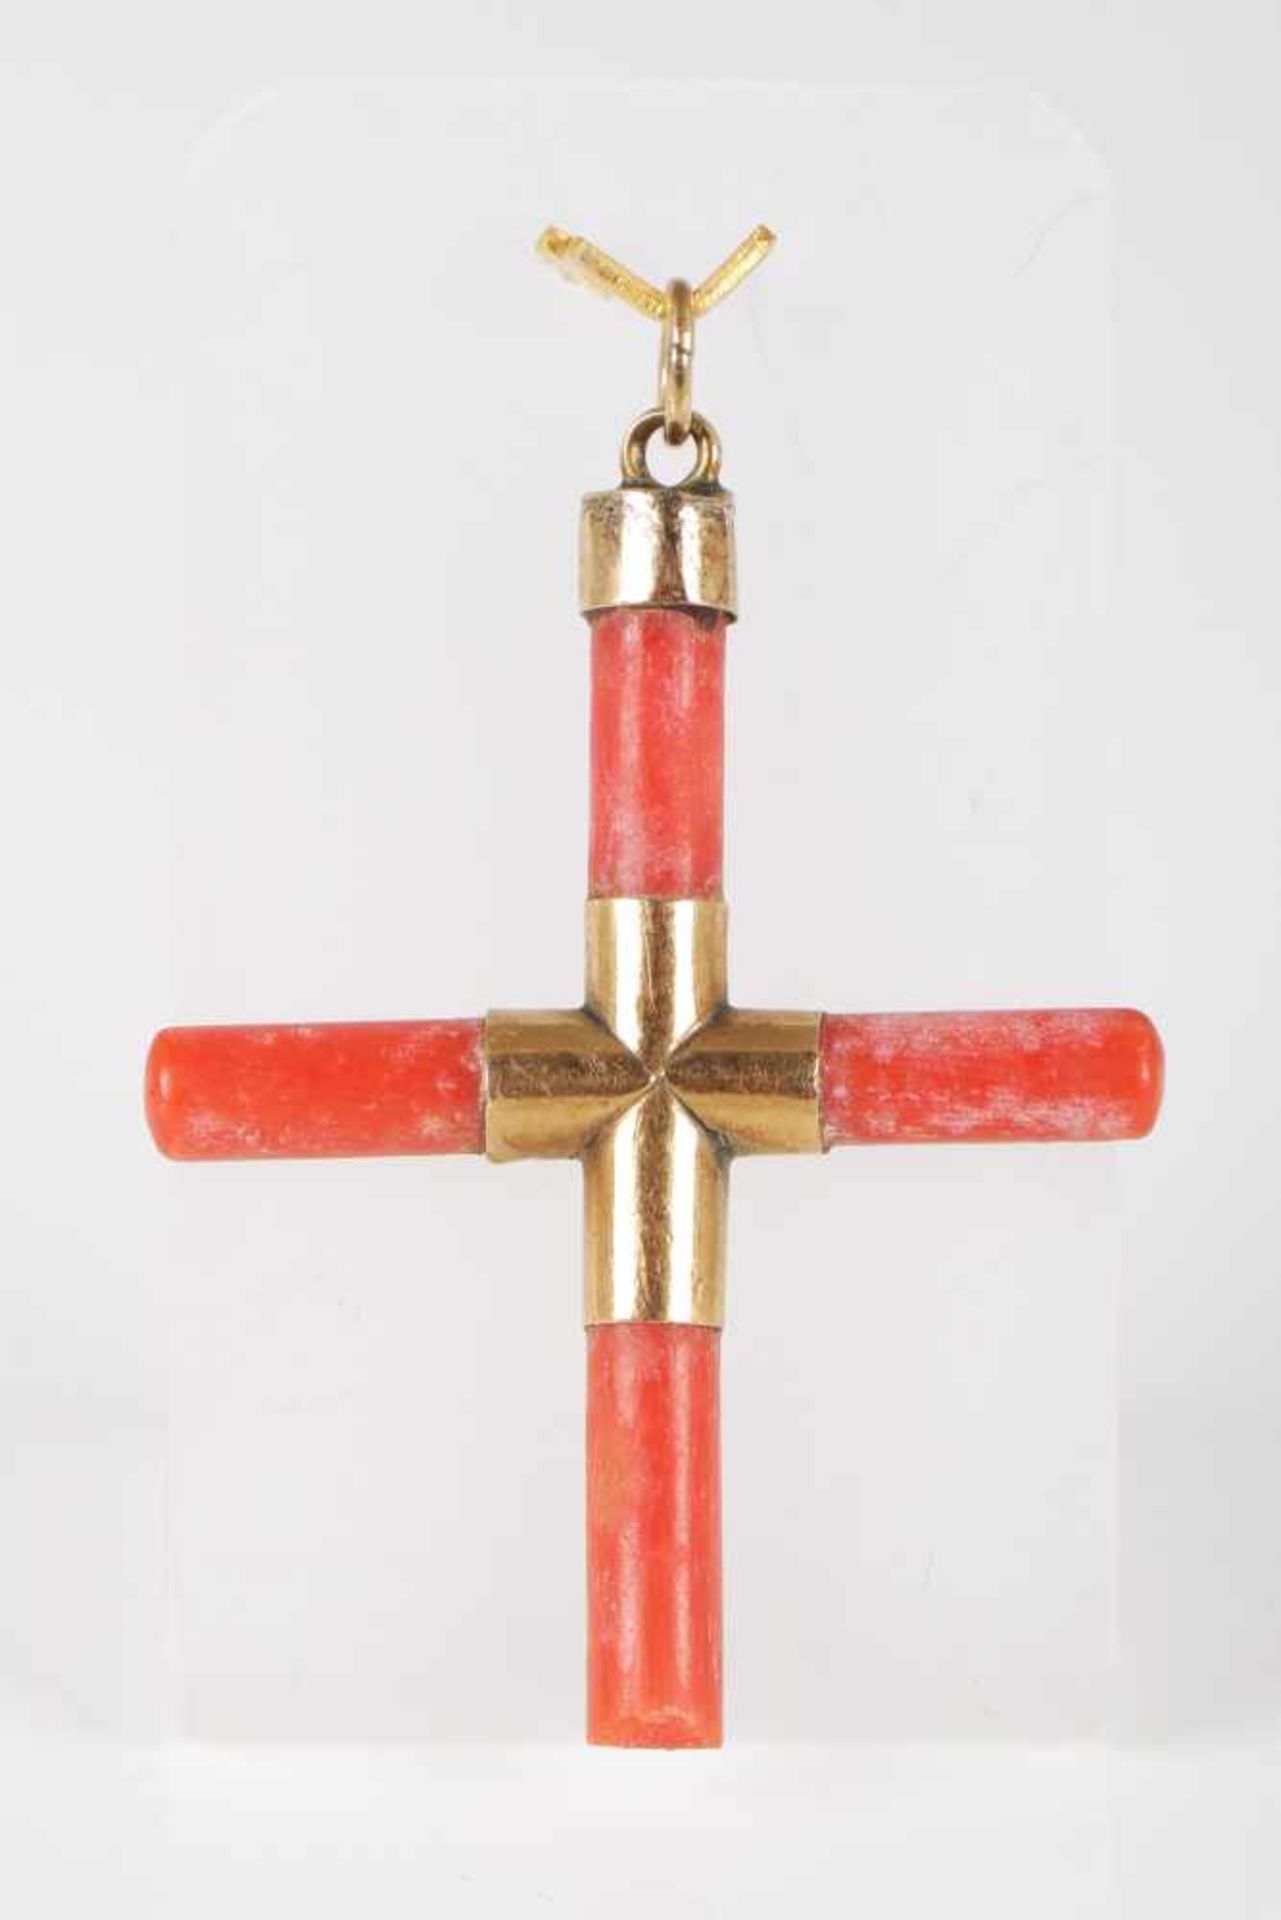 KreuzanhängerKoralle und Rotgold, antik, L 4,5cm - Bild 2 aus 2